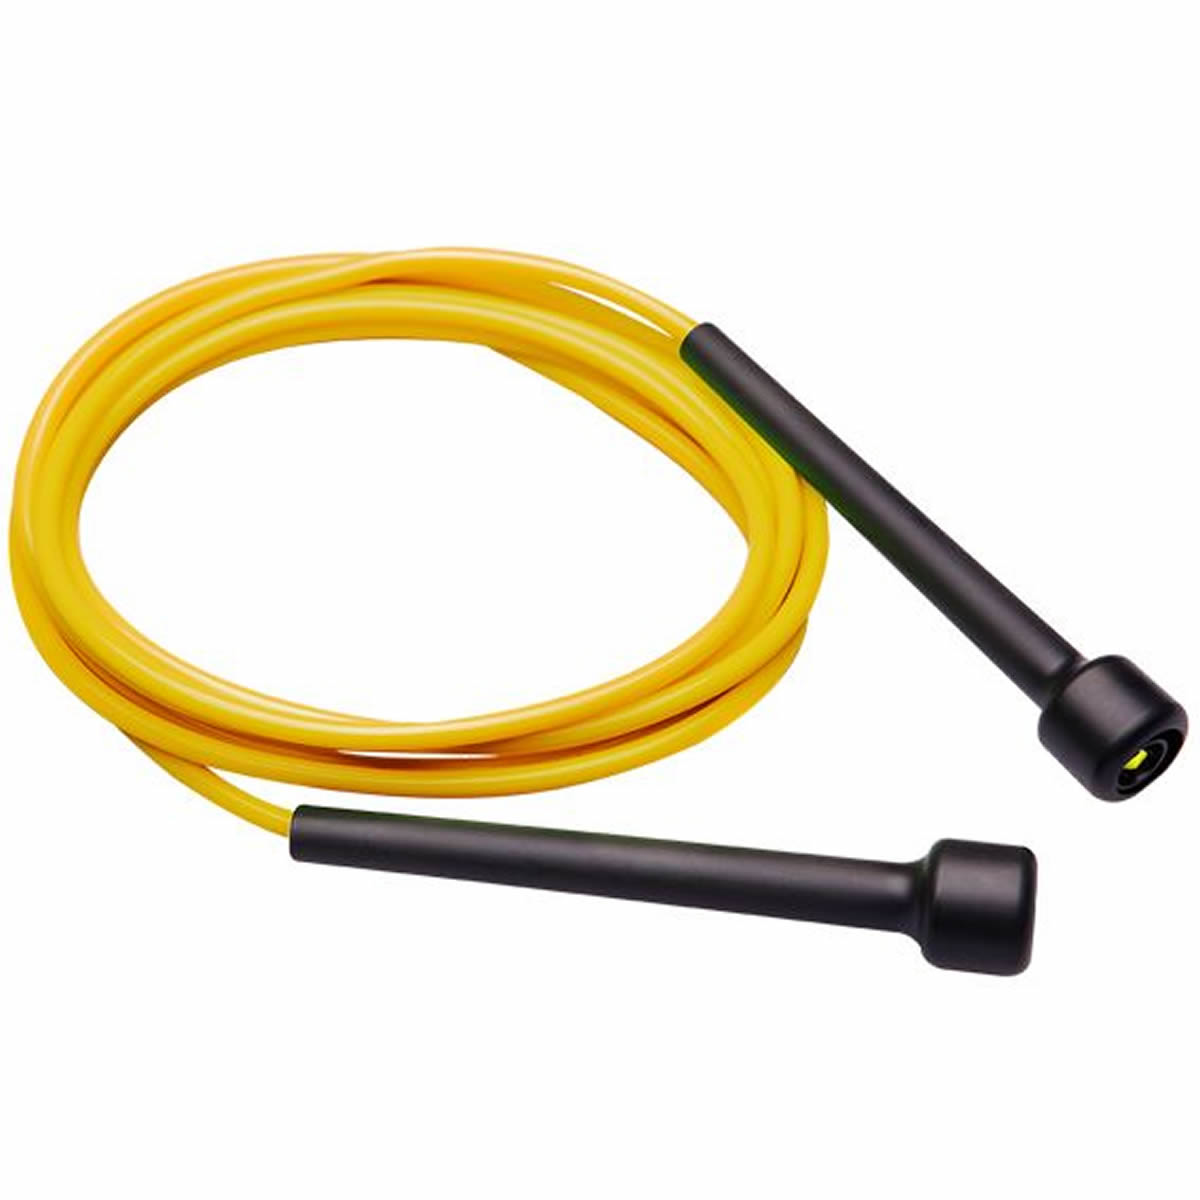 Corda de Pular - Slim - PVC - 3m - com Girador - Prottector - Loja do Competidor